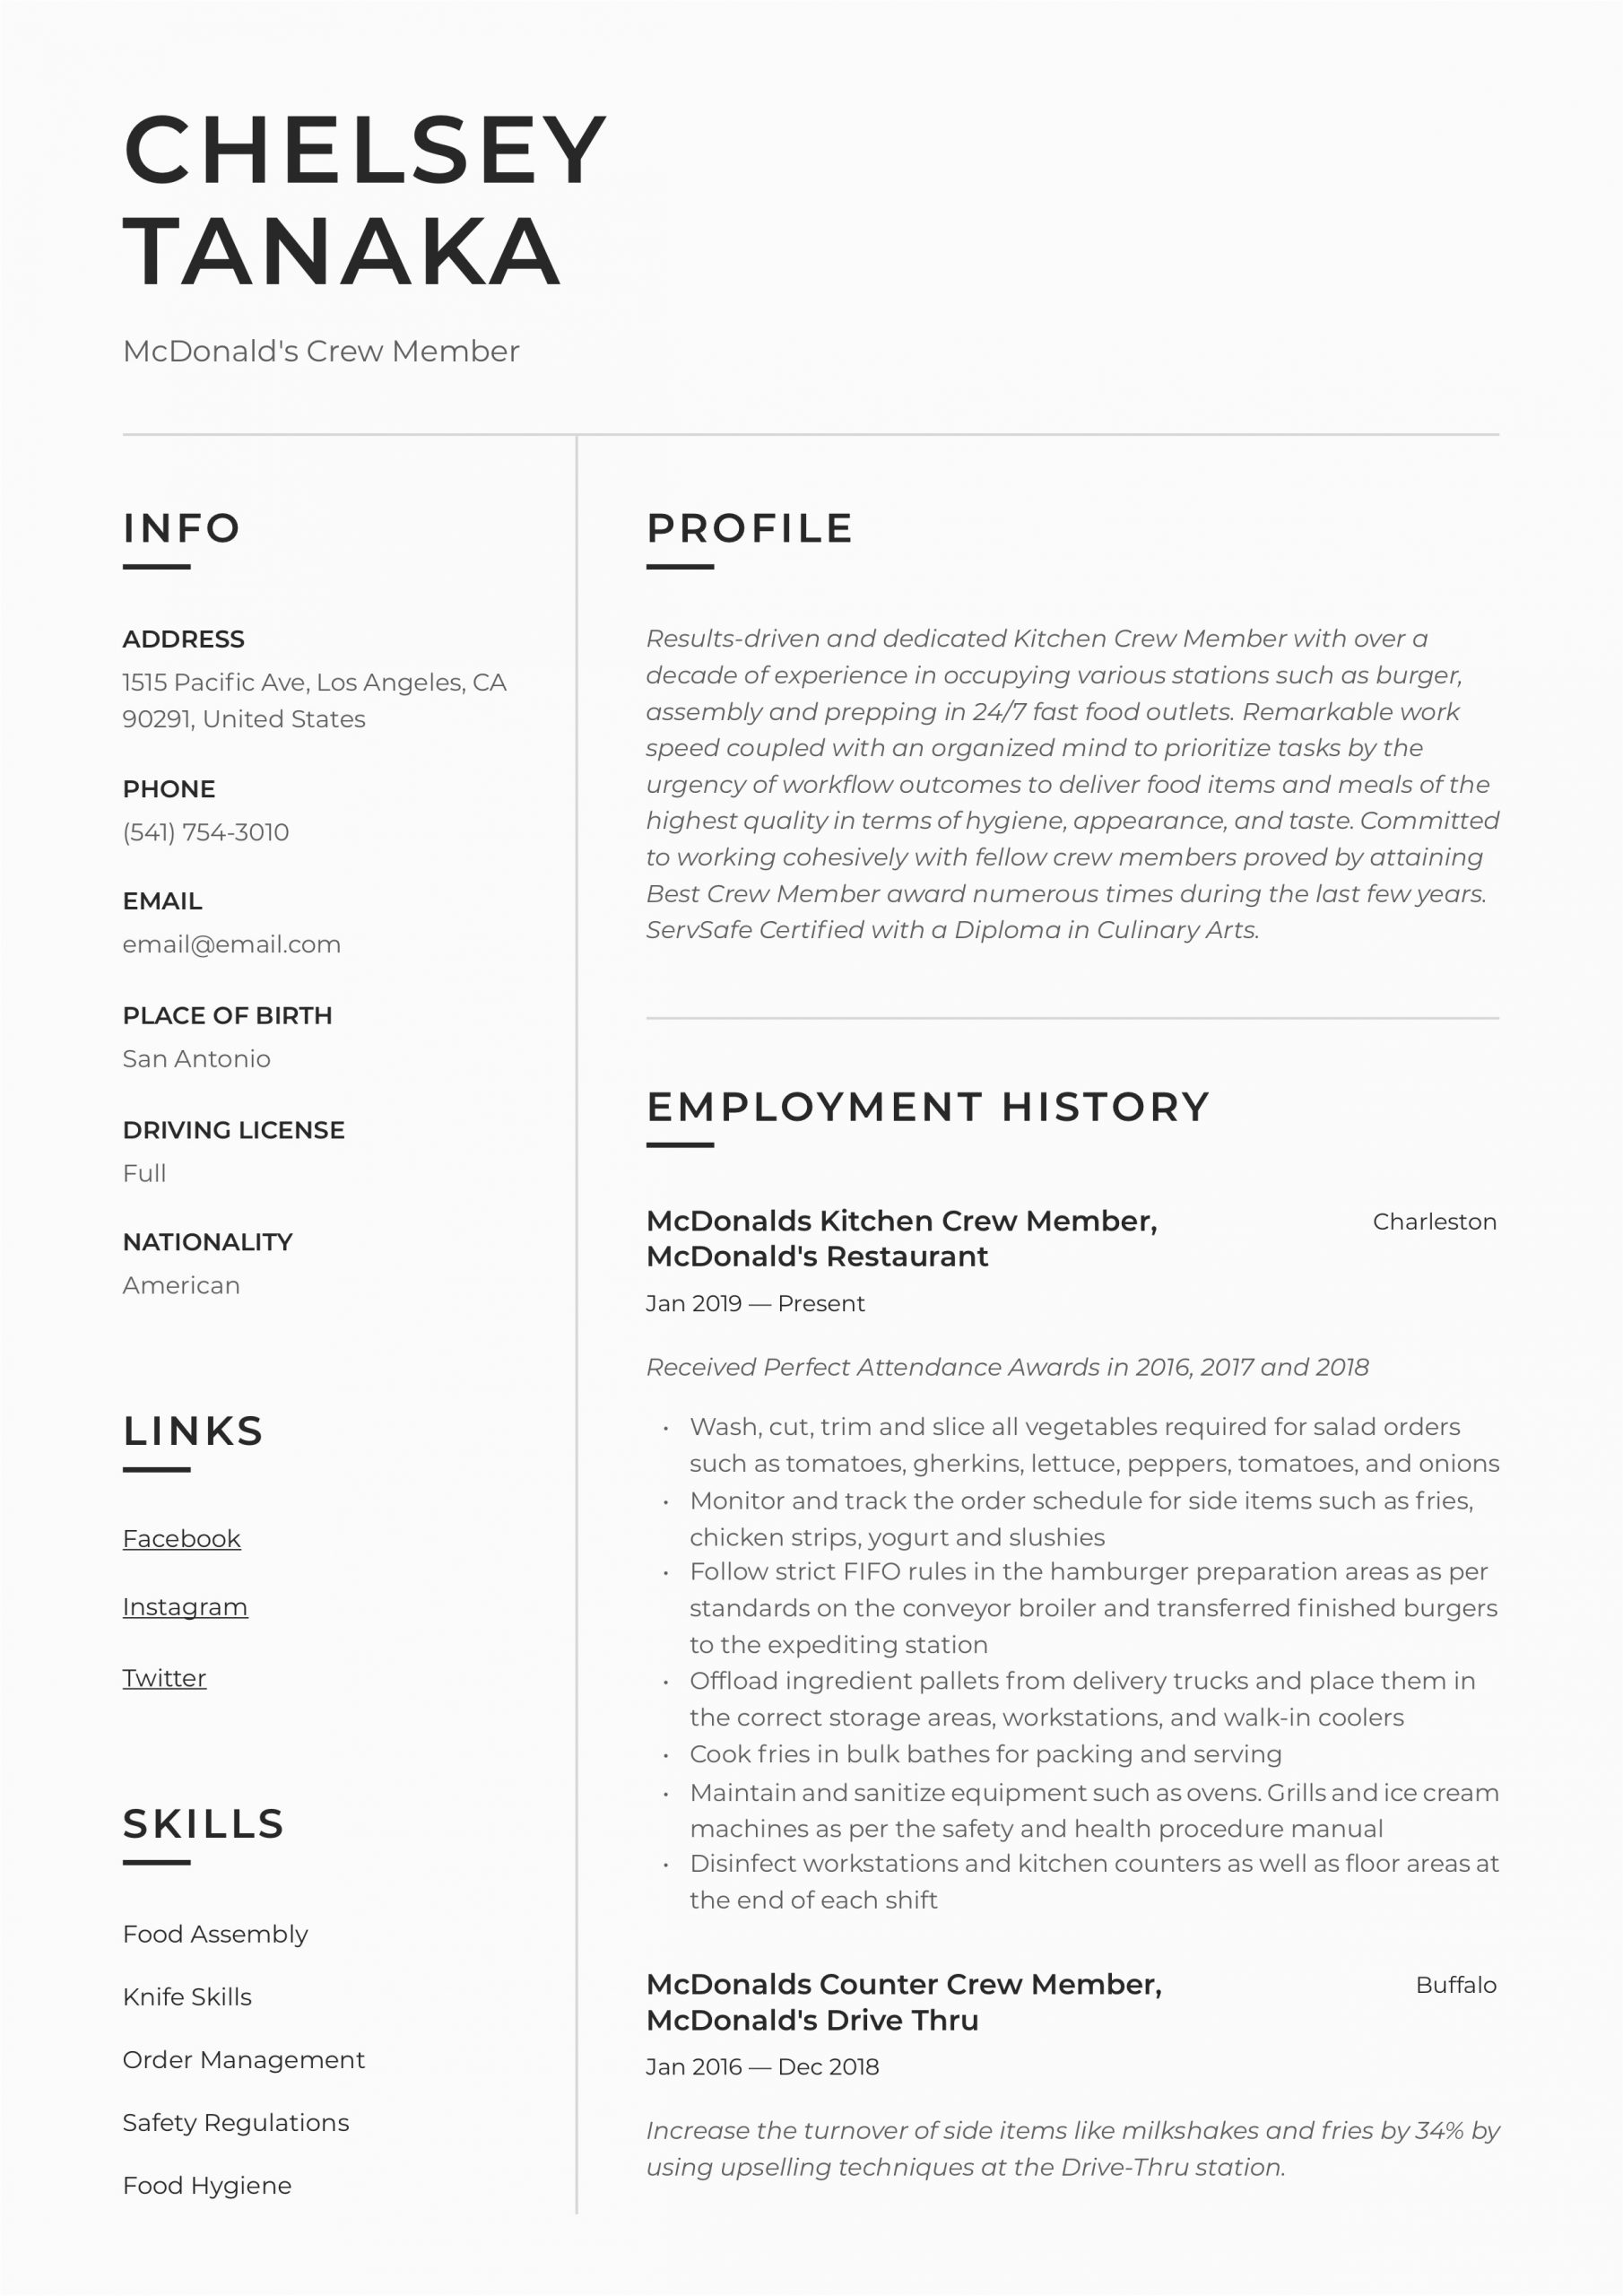 Sample Resume for Mcdonalds Crew Member Mcdonalds Crew Member Resume & Writing Guide